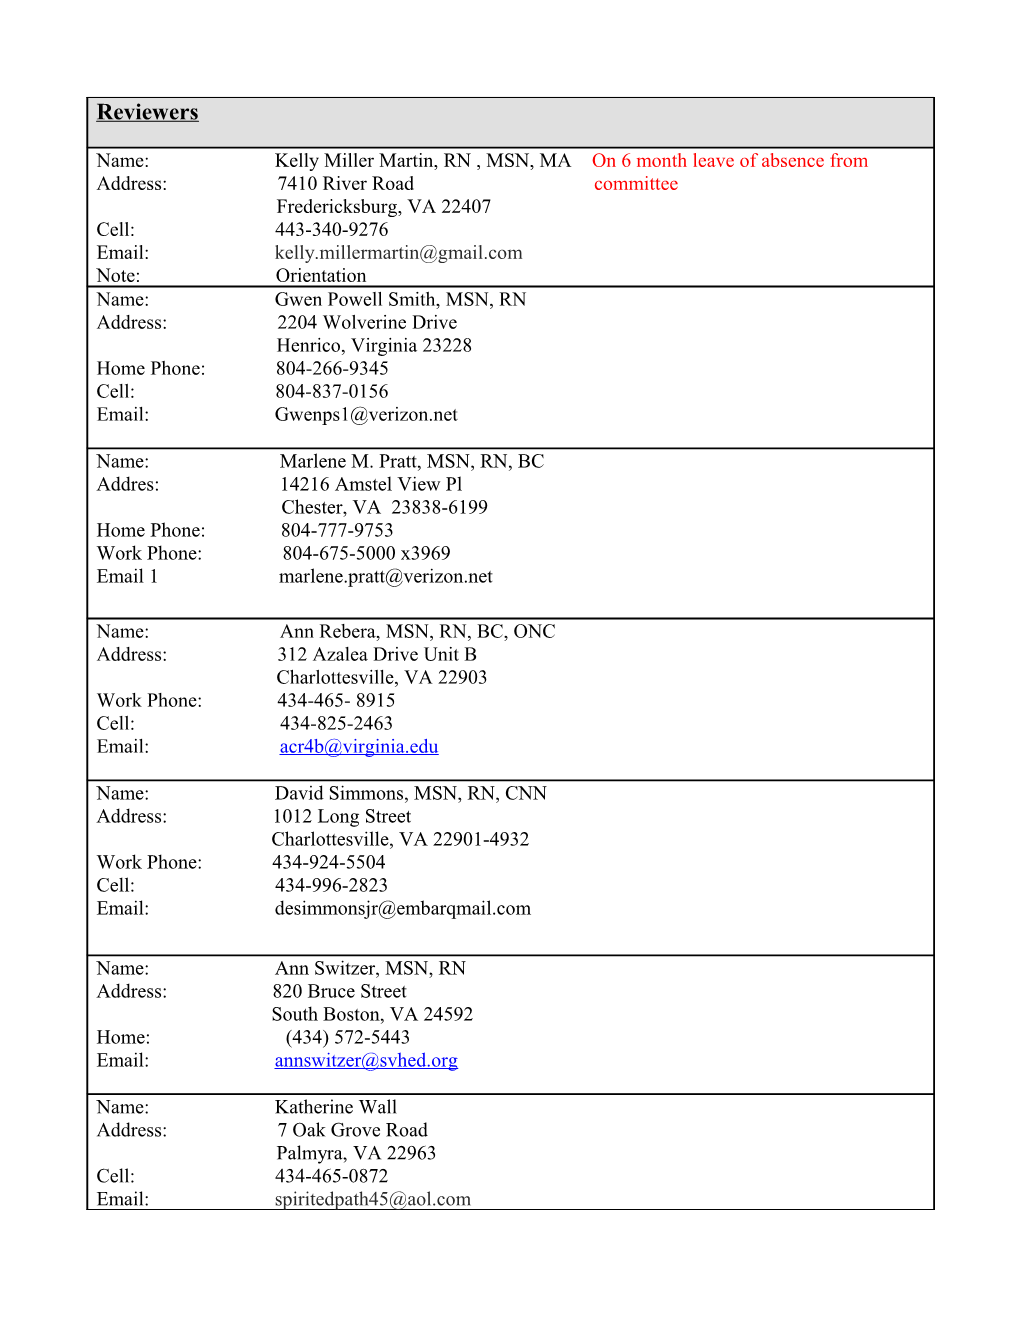 2012 CEA Committee Member List Updated 03.30.2012